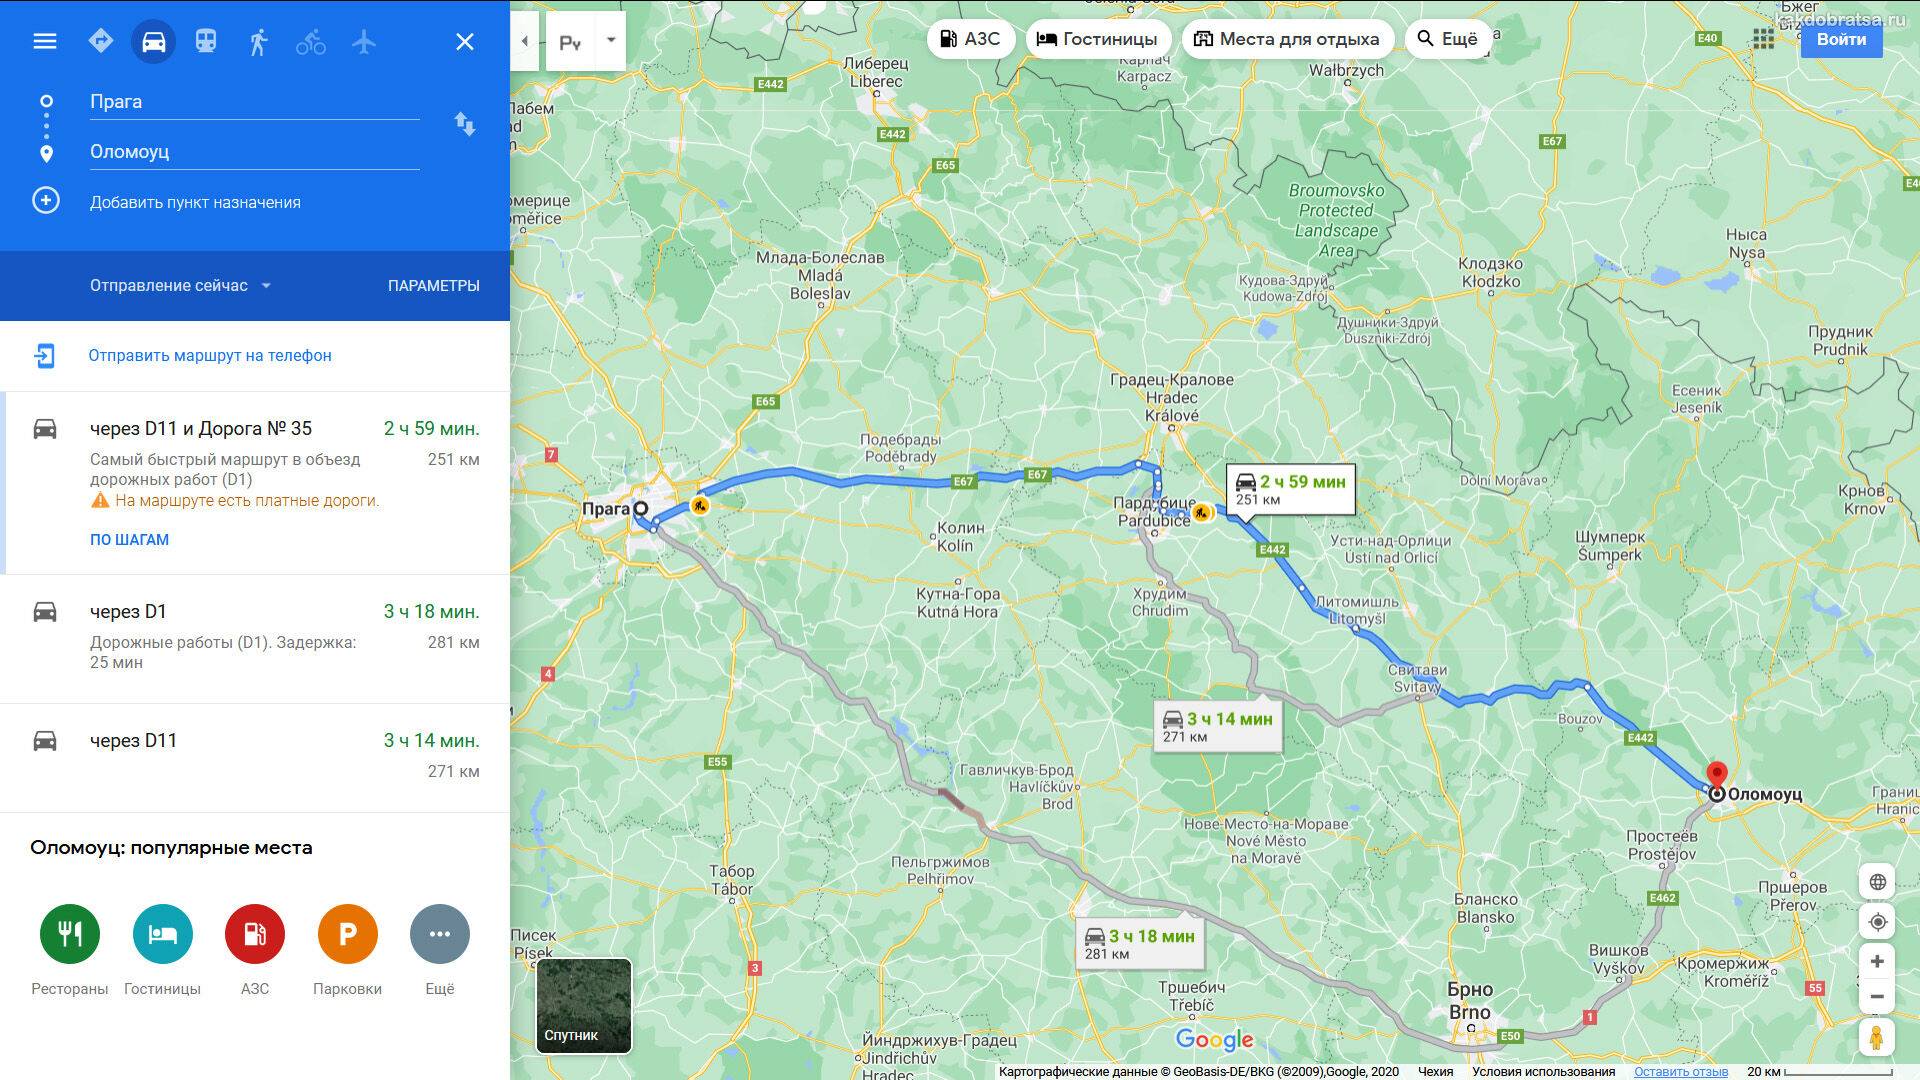 Как добраться из праги в мюнхен: автобус, поезд, трансфер, машина. расстояние, цены на билеты и расписание 2021 на туристер.ру